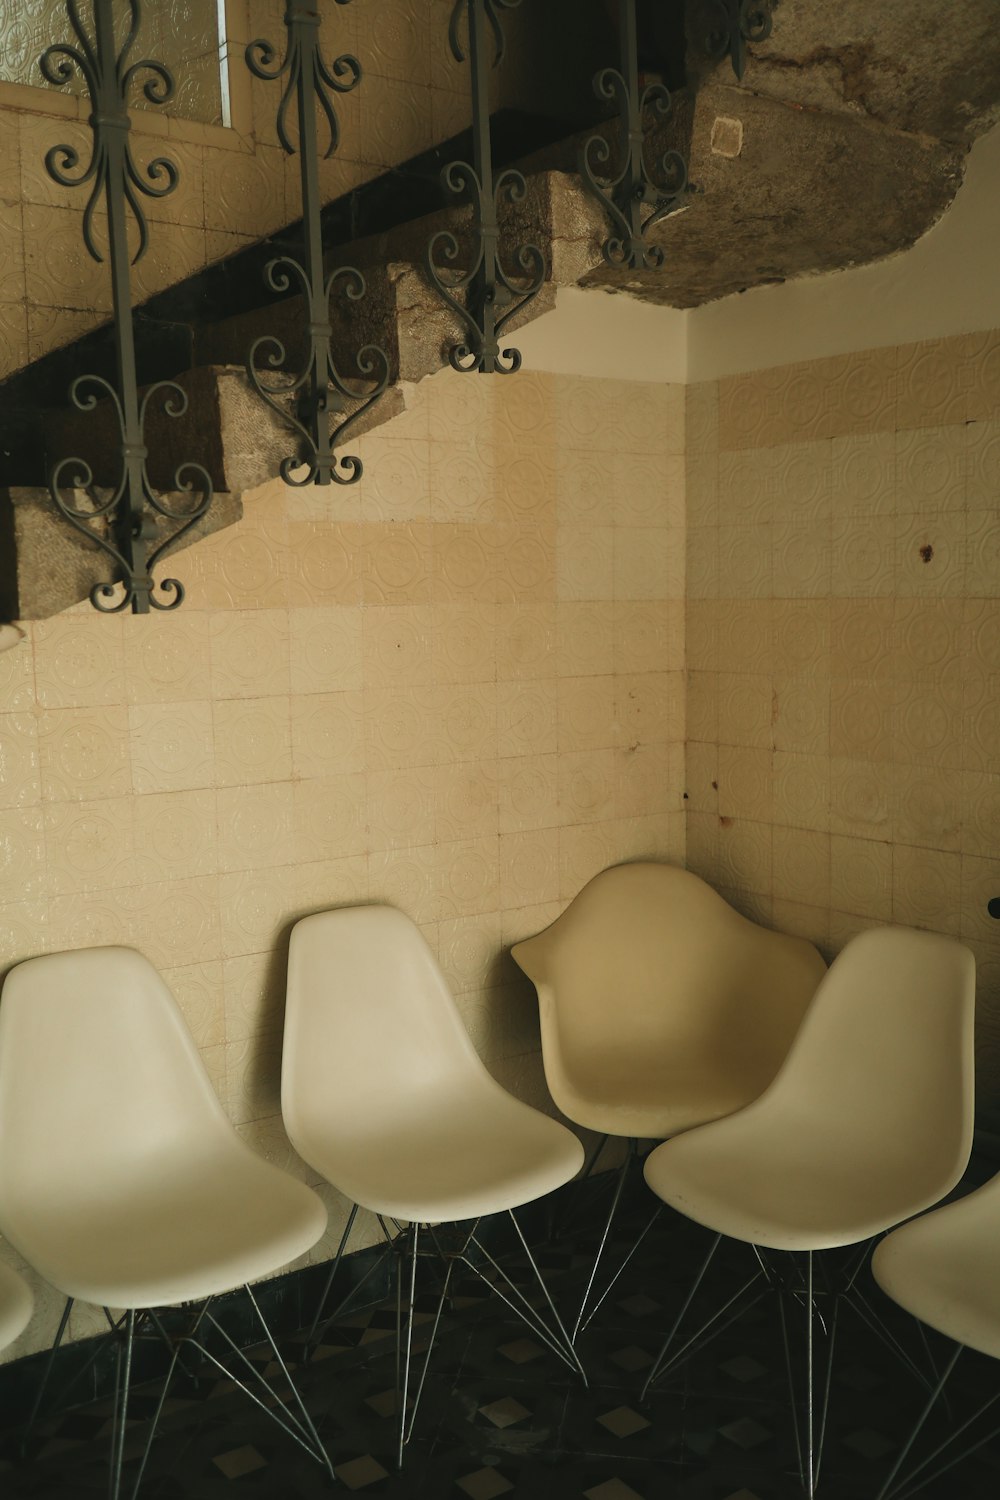 quatro cadeiras brancas estão alinhadas contra uma parede